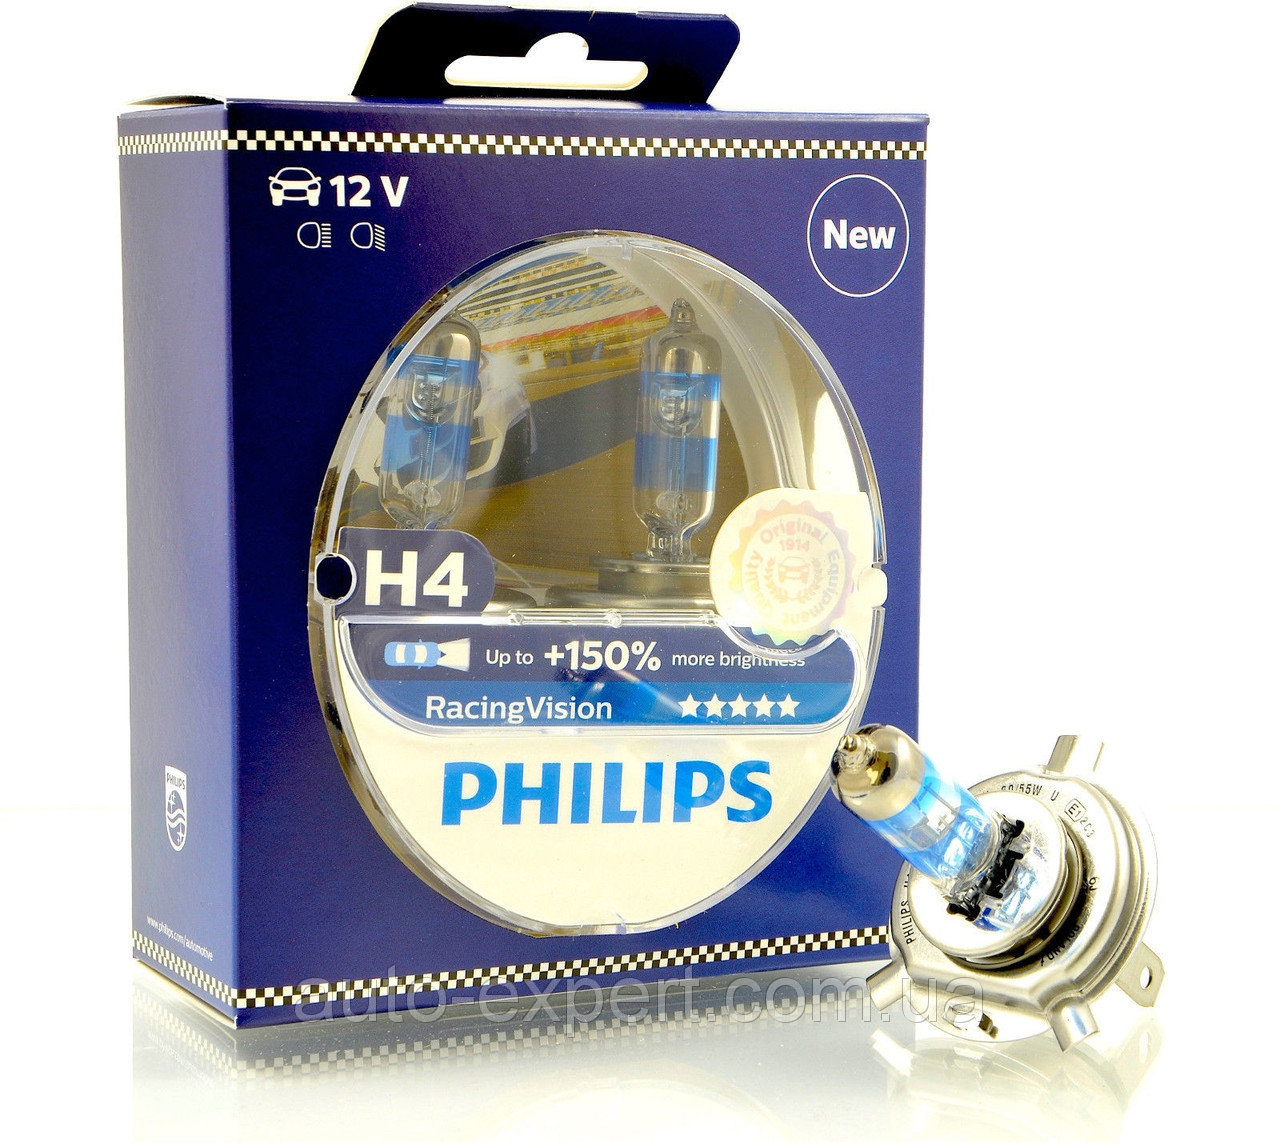 Philips h4 купить. Филипс лампы автомобильные h4. Лампочки h4 Philips +150. Галогеновые лампы h4 Филипс +150. Philips Racing Vision +150 h4.